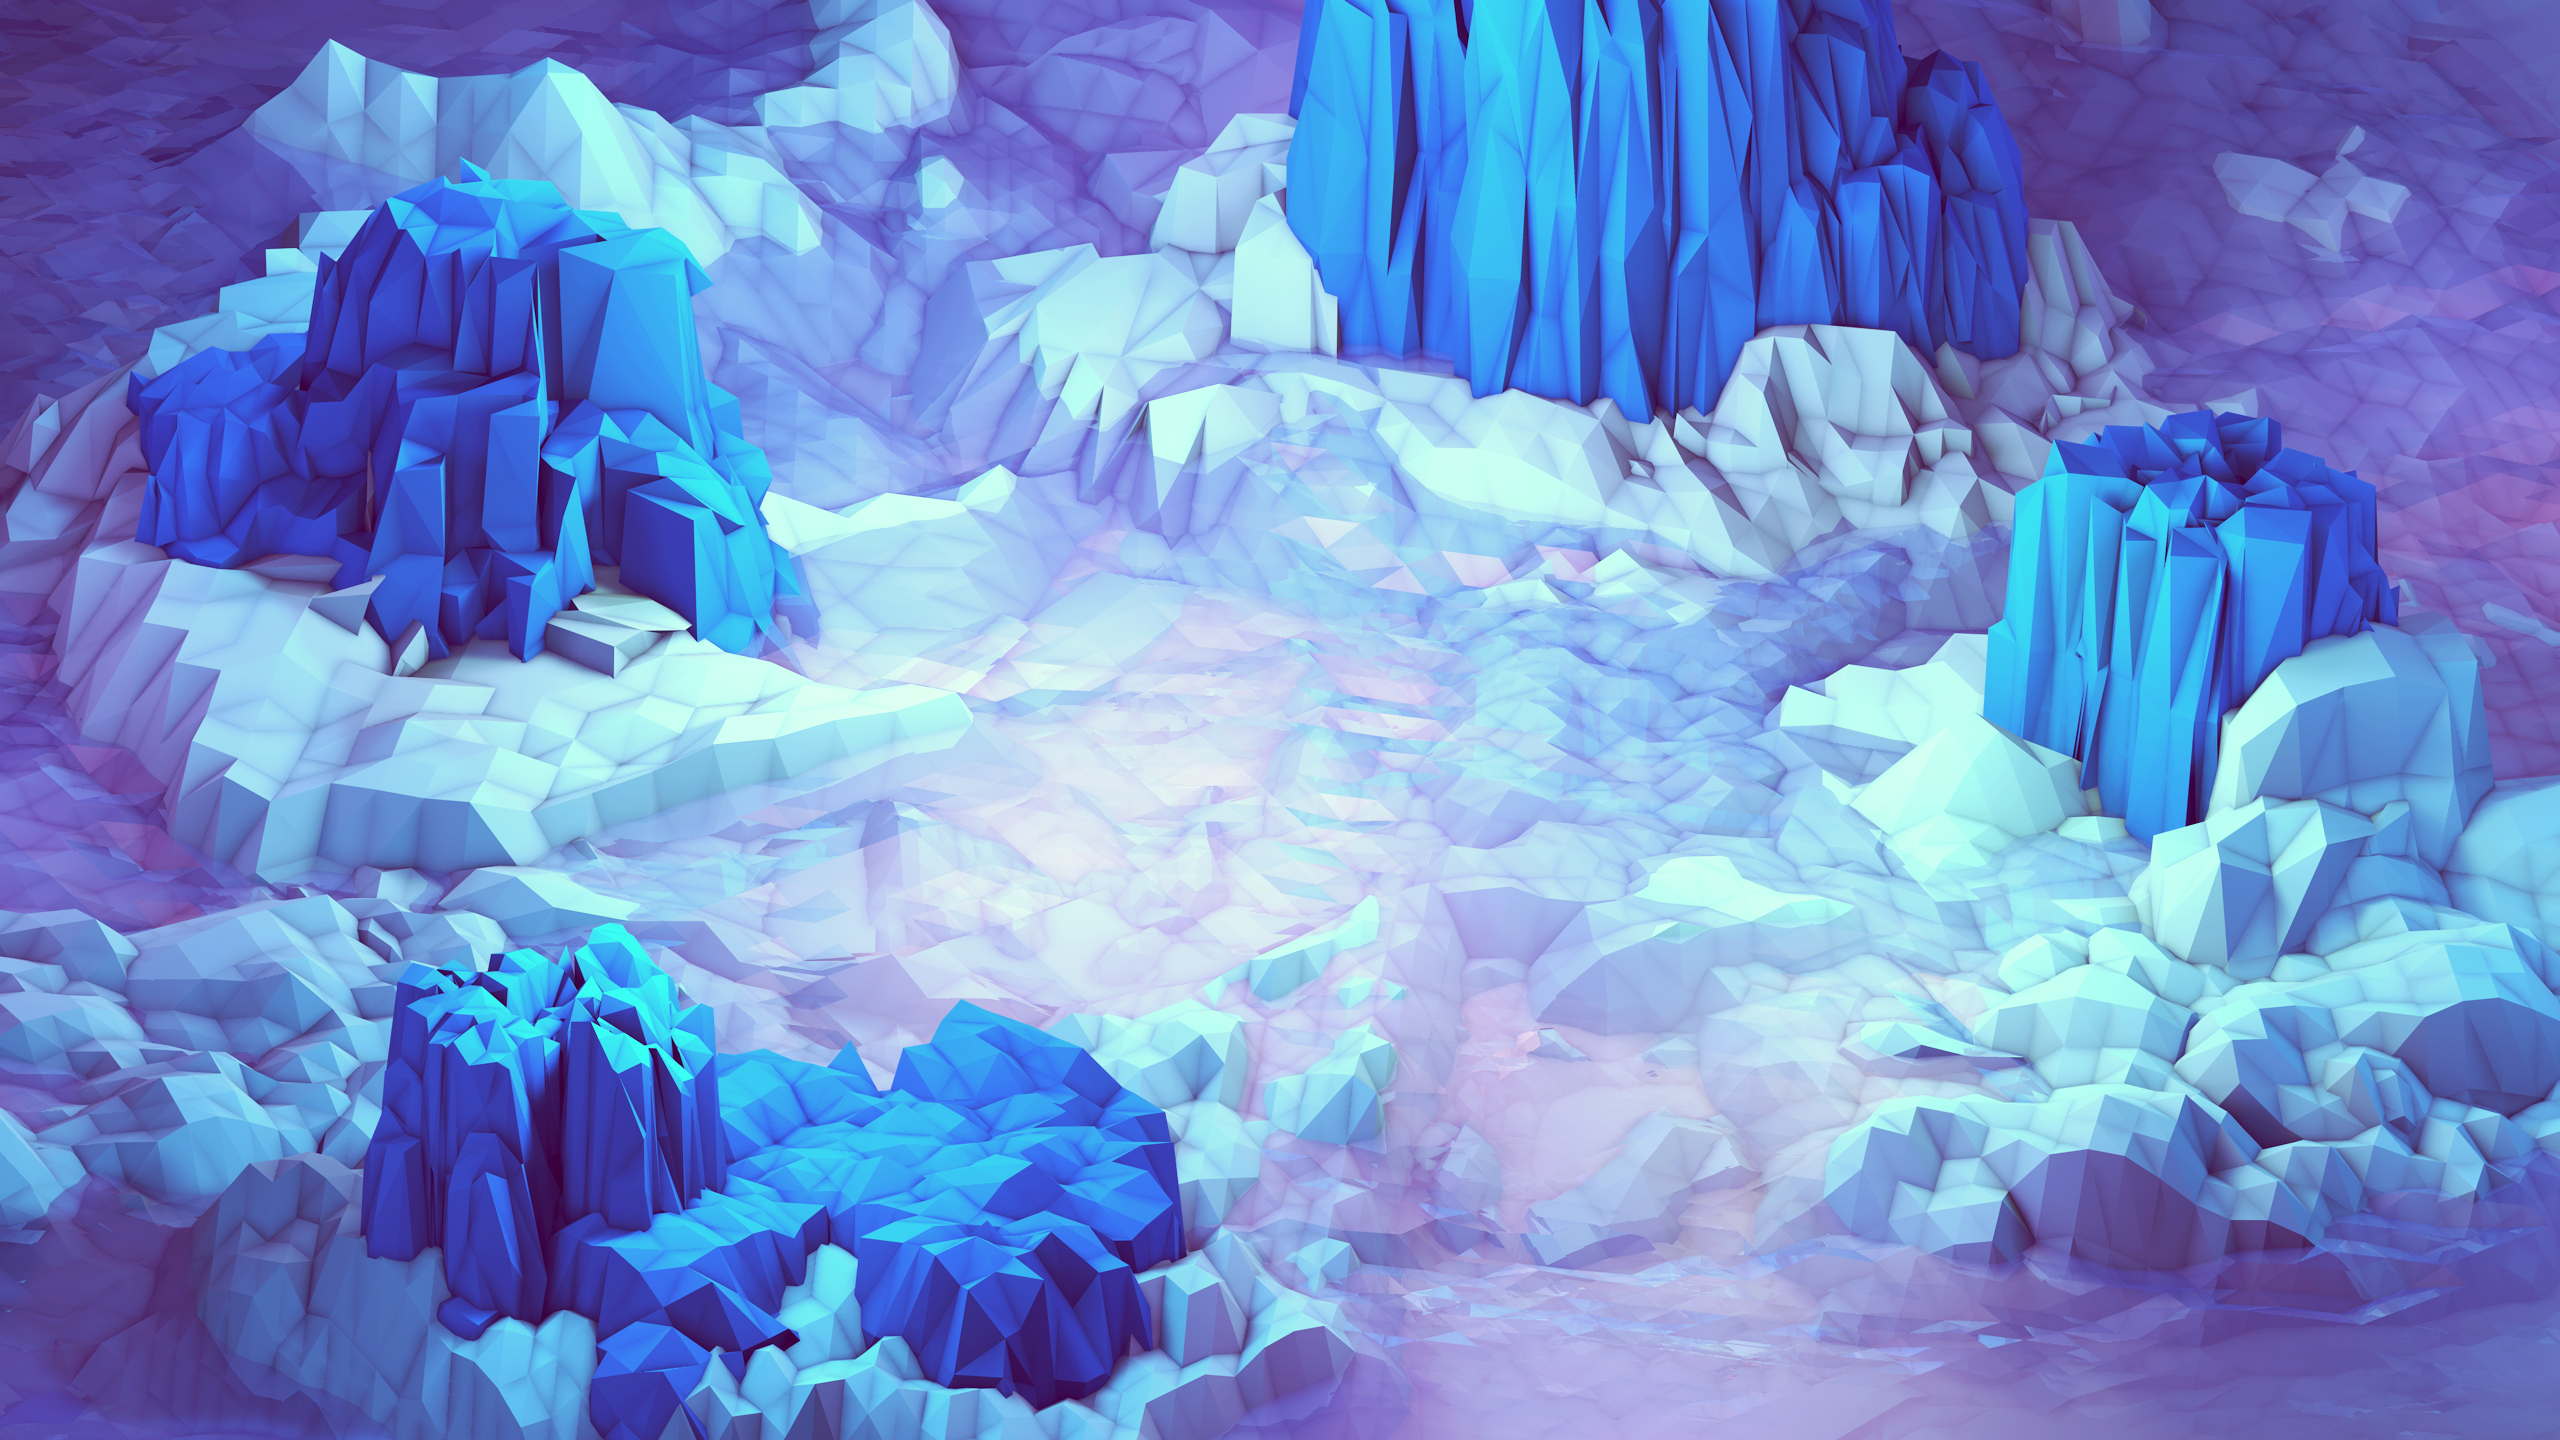 Ледяные пещеры